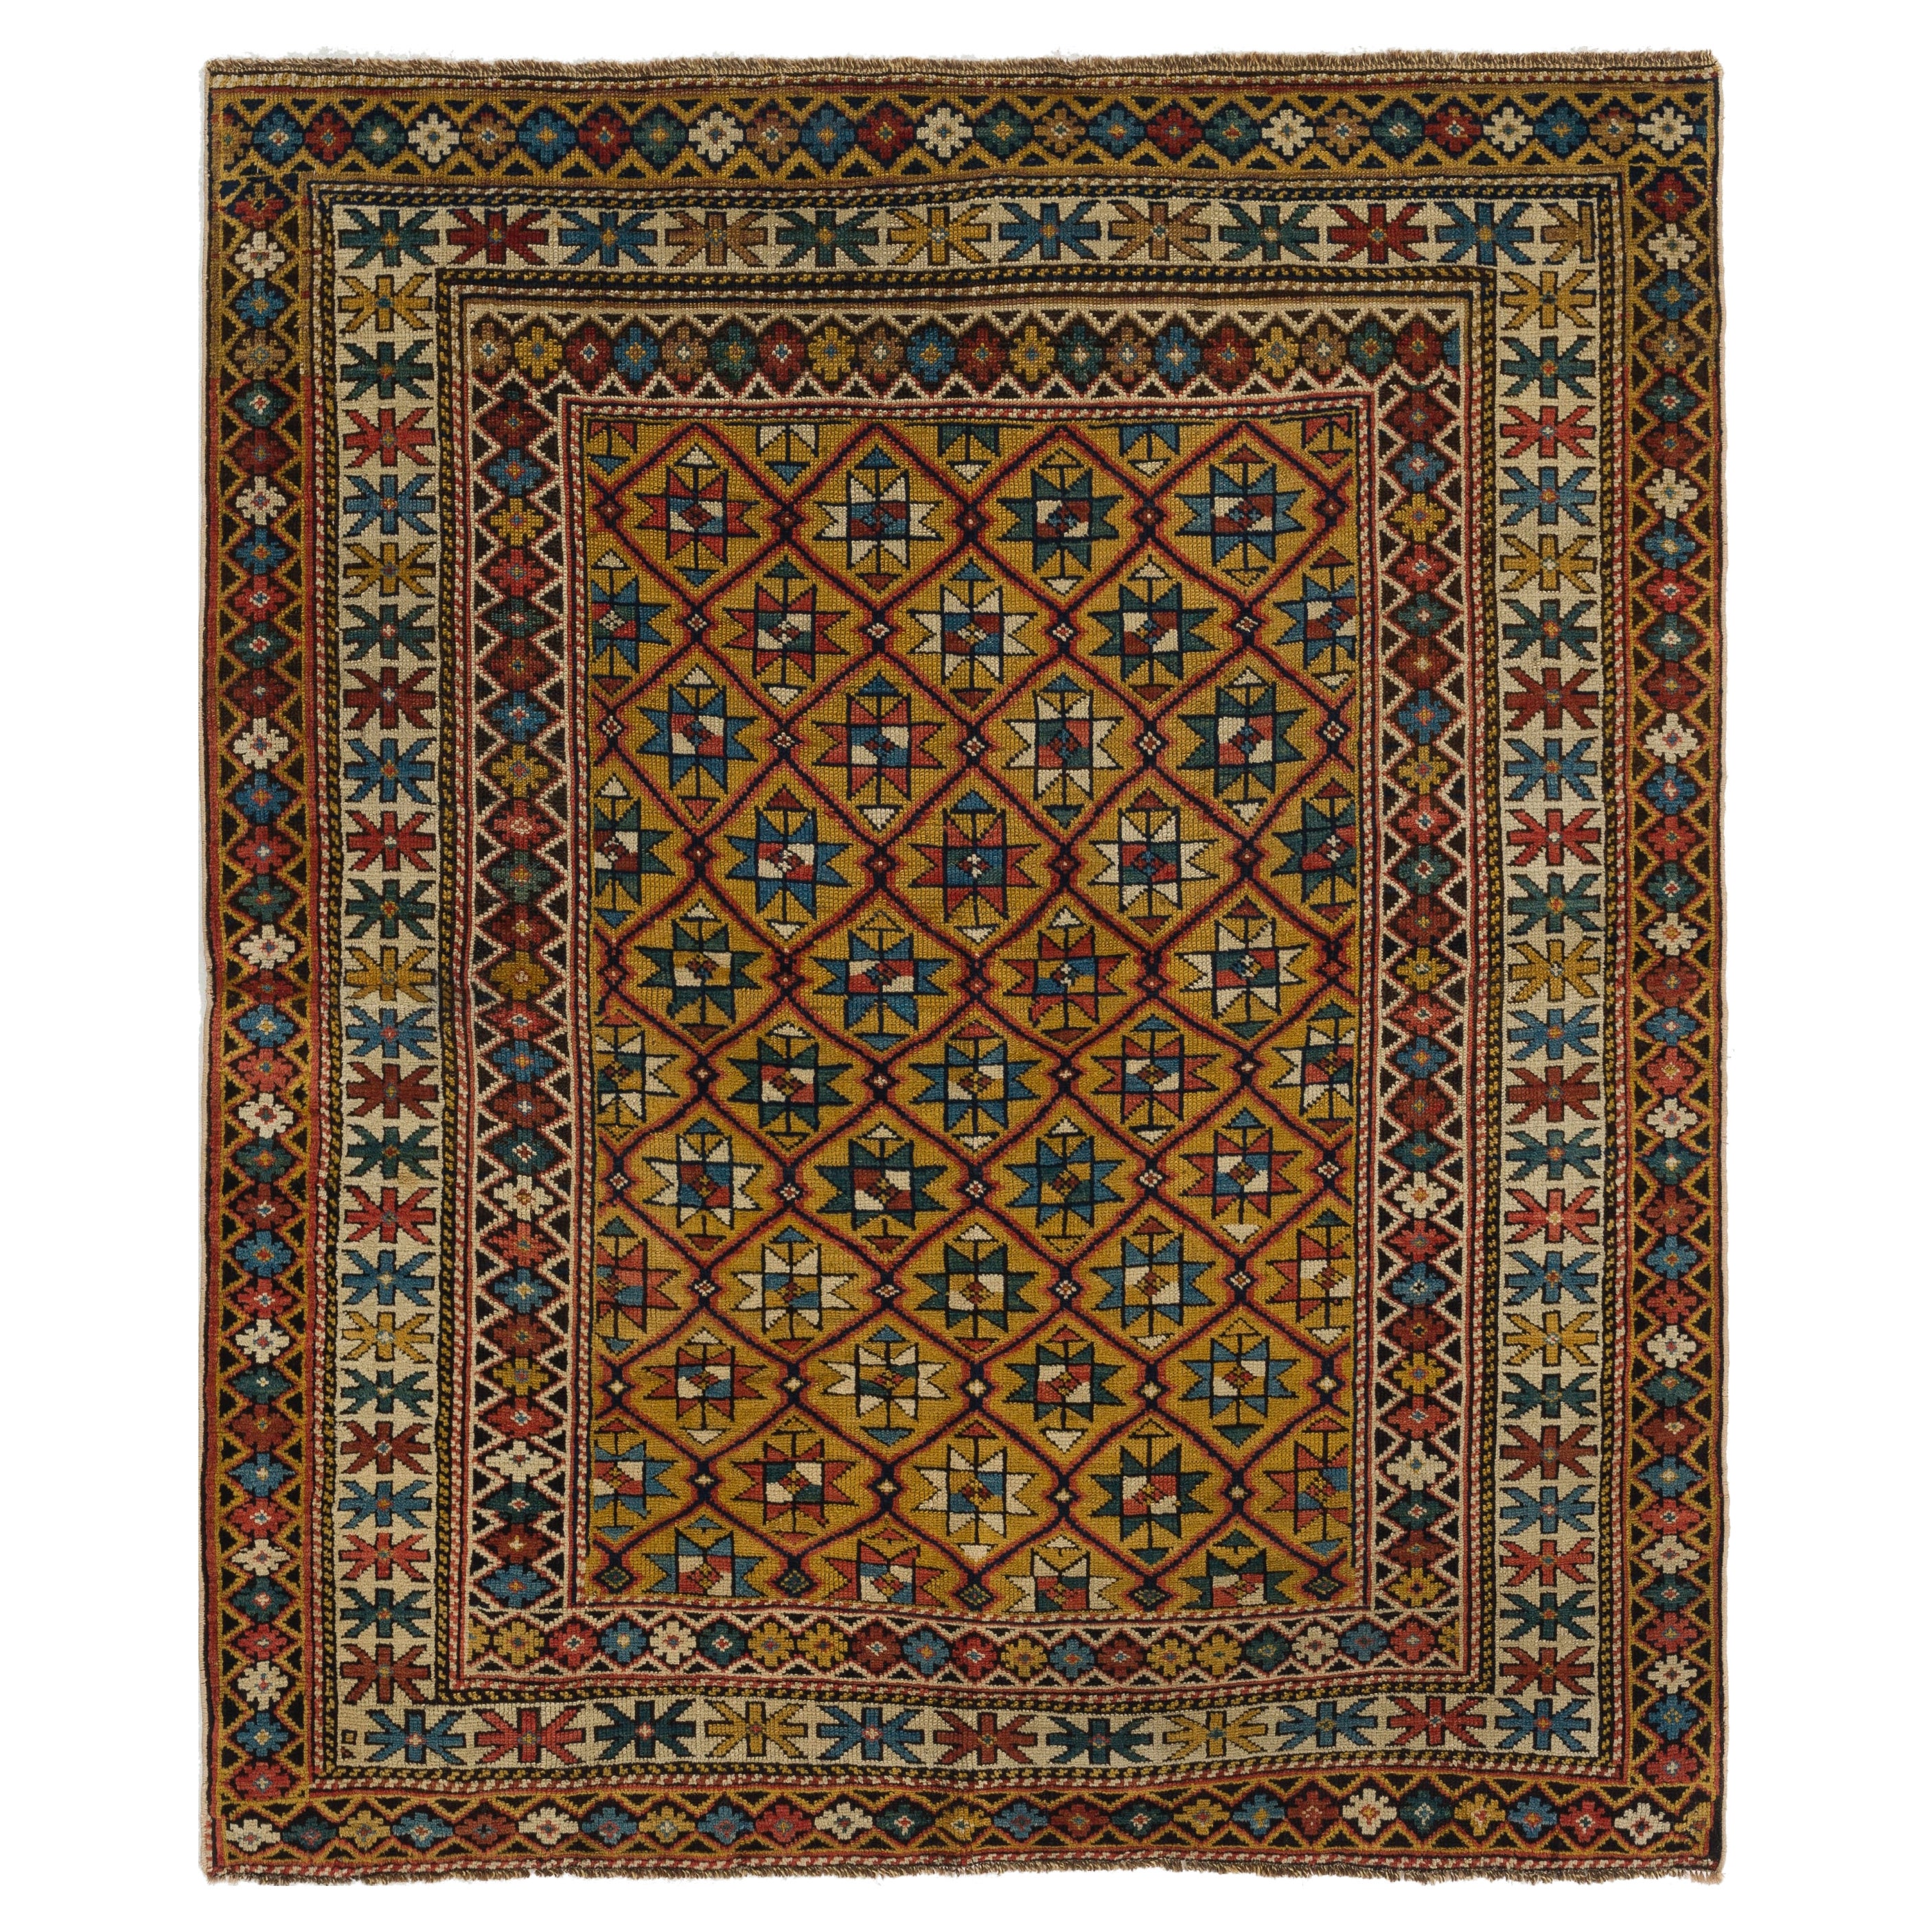 4' x 4'4'' Antiker kaukasischer Schirwan-Teppich. Um 1880. Einzigartiger Teppich